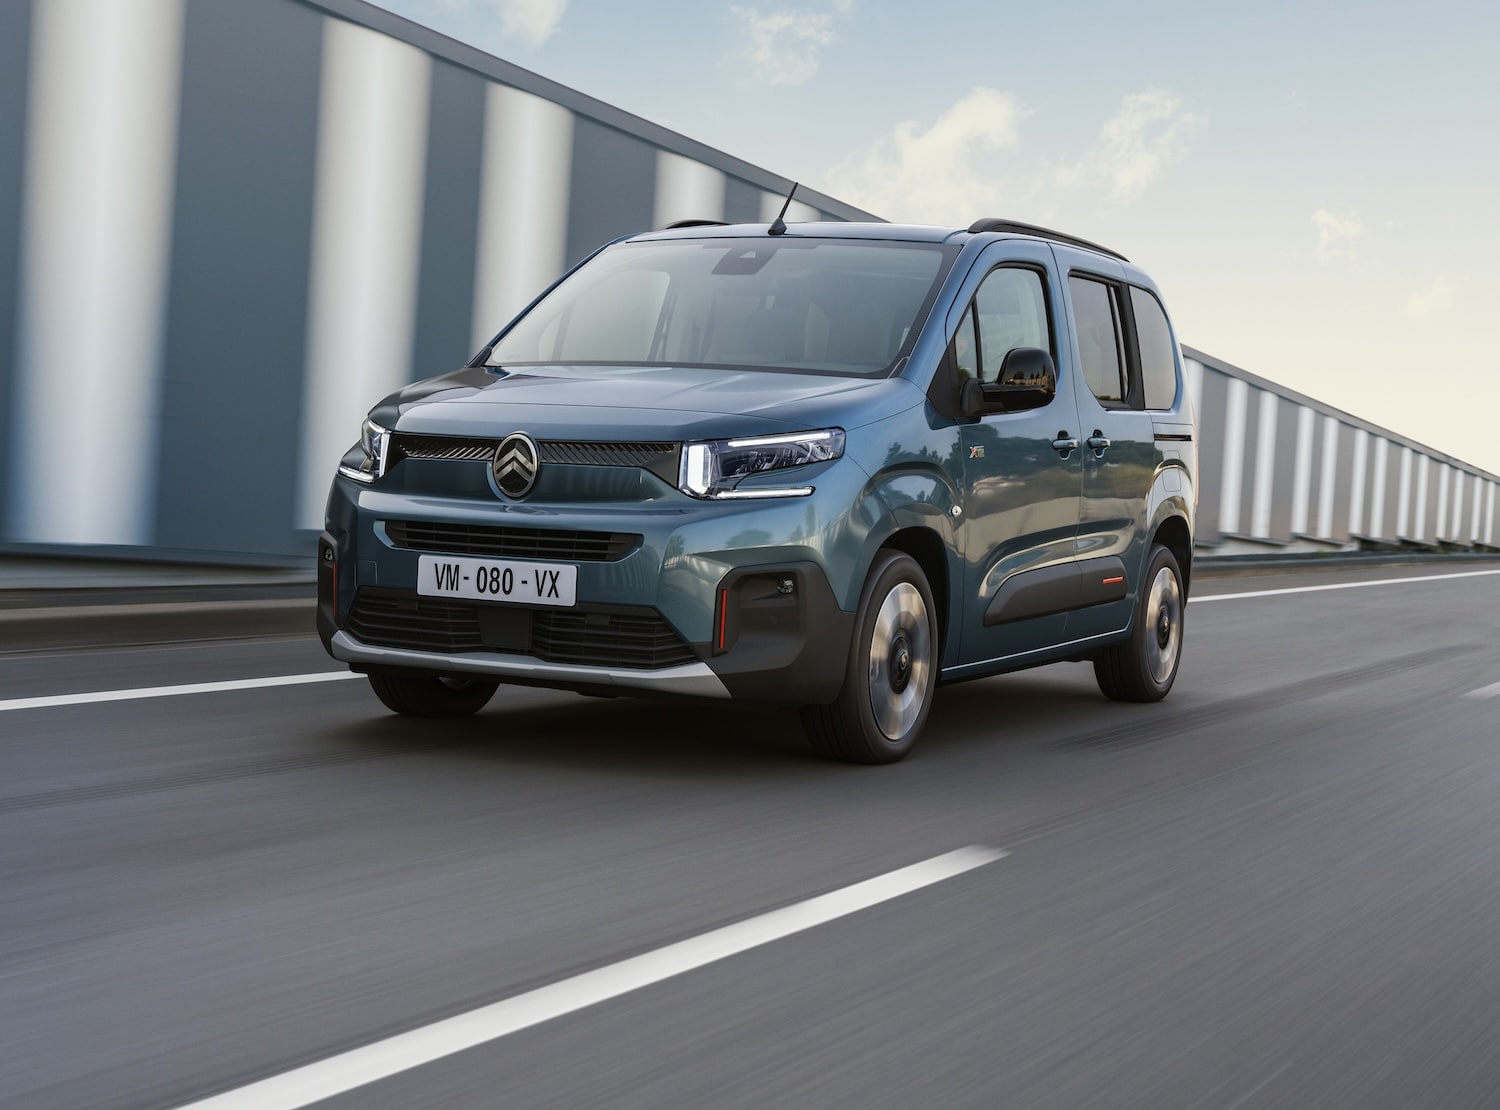 Citroën : le Berlingo électrique se refait une beauté et gagne en autonomie